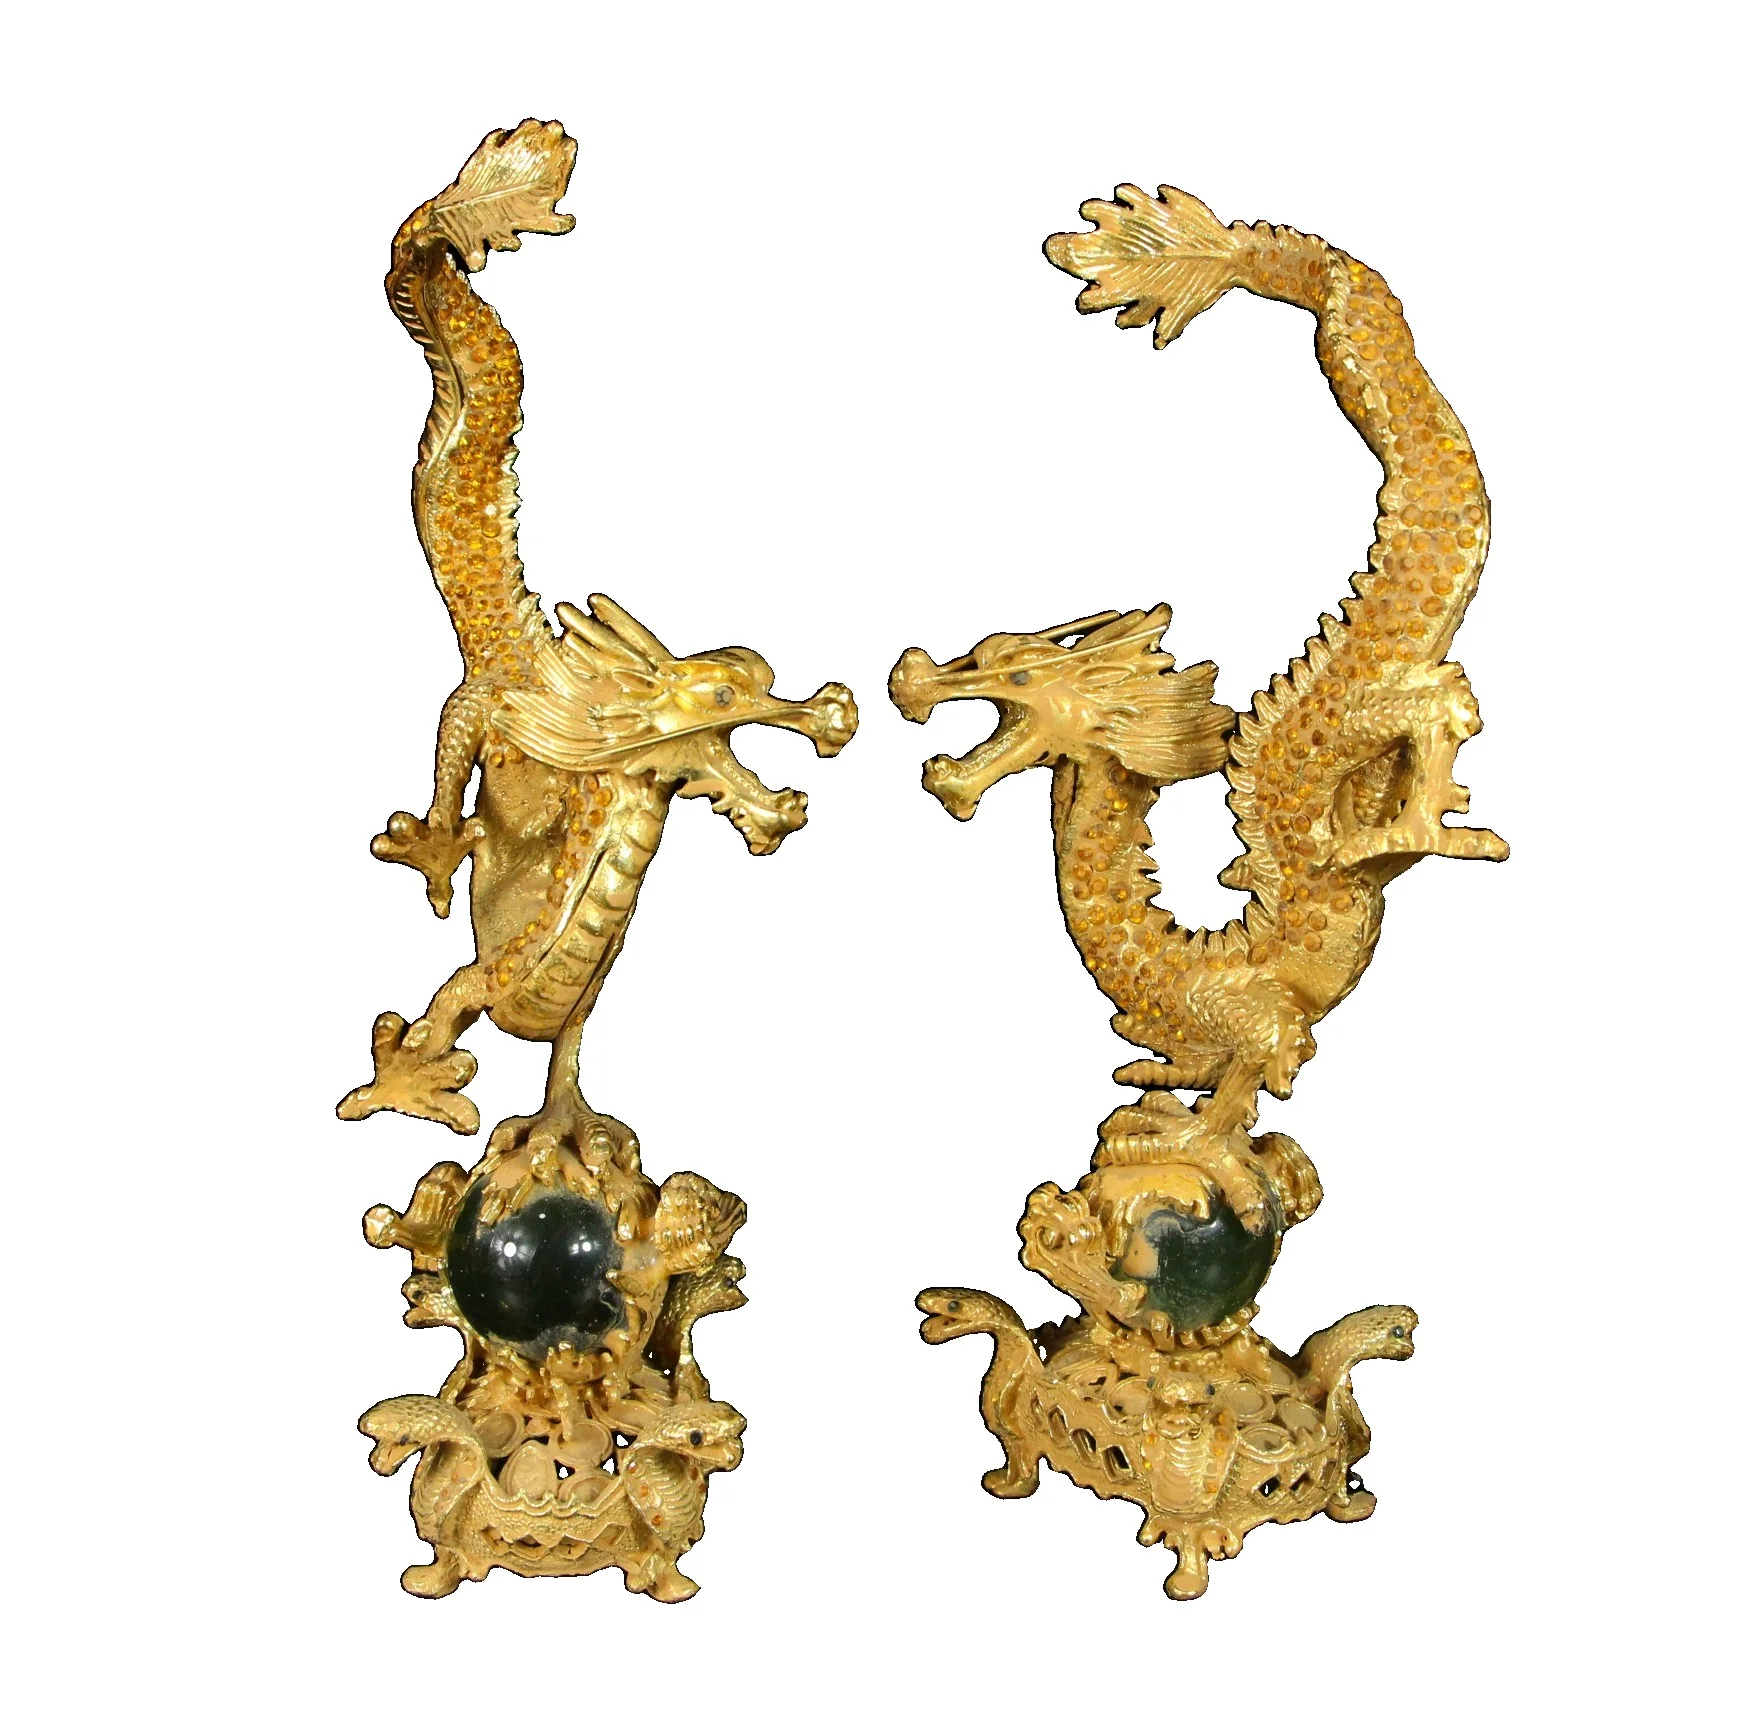 

Коллекционная пара дракона LAOJUNLU с медной позолотой и кошачий глаз длиной 11 см, имитация античной бронзы, коллекция шедевров